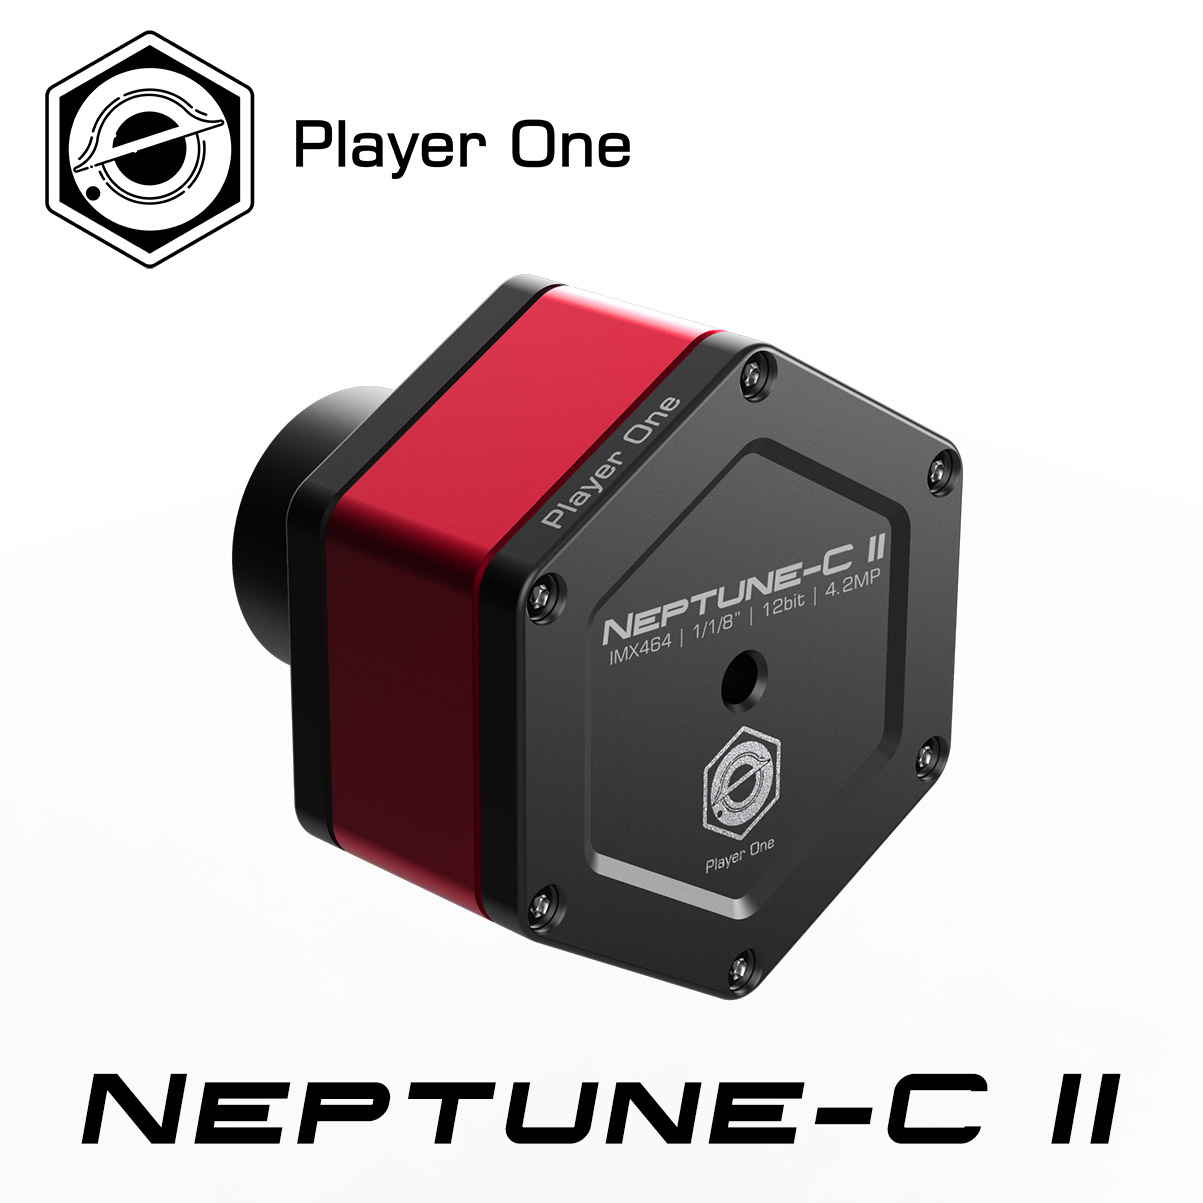 電視観望ガイドブックつき 超定番 Player One Neptune-C II ネプチューン USB3.0 IMX464搭載 CMOSカメラ カラー 惑星撮影 電視観望に 新商品